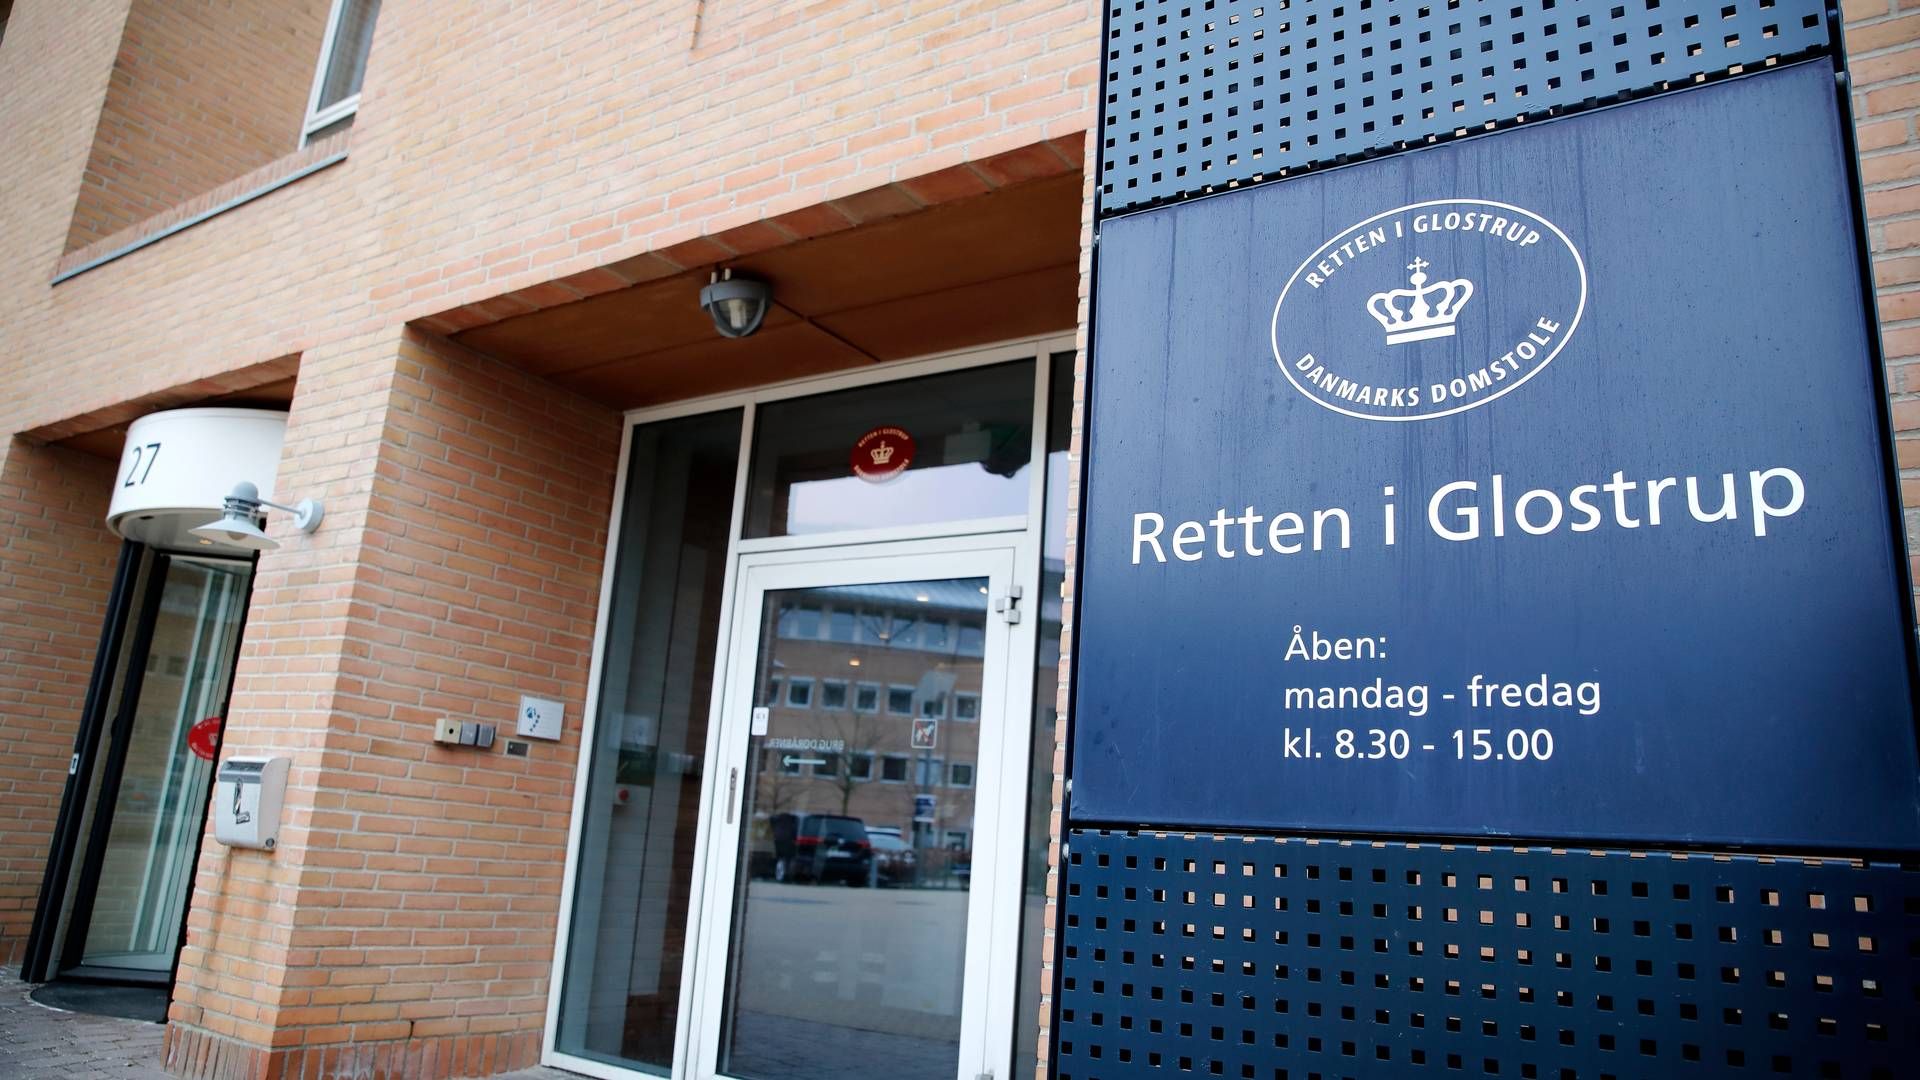 Retten i Glostrup har pt. en verserende stor sag, da sagen om udbyttesvindel med 320 mio. kr. kører ved byretten. | Foto: Jens Dresling